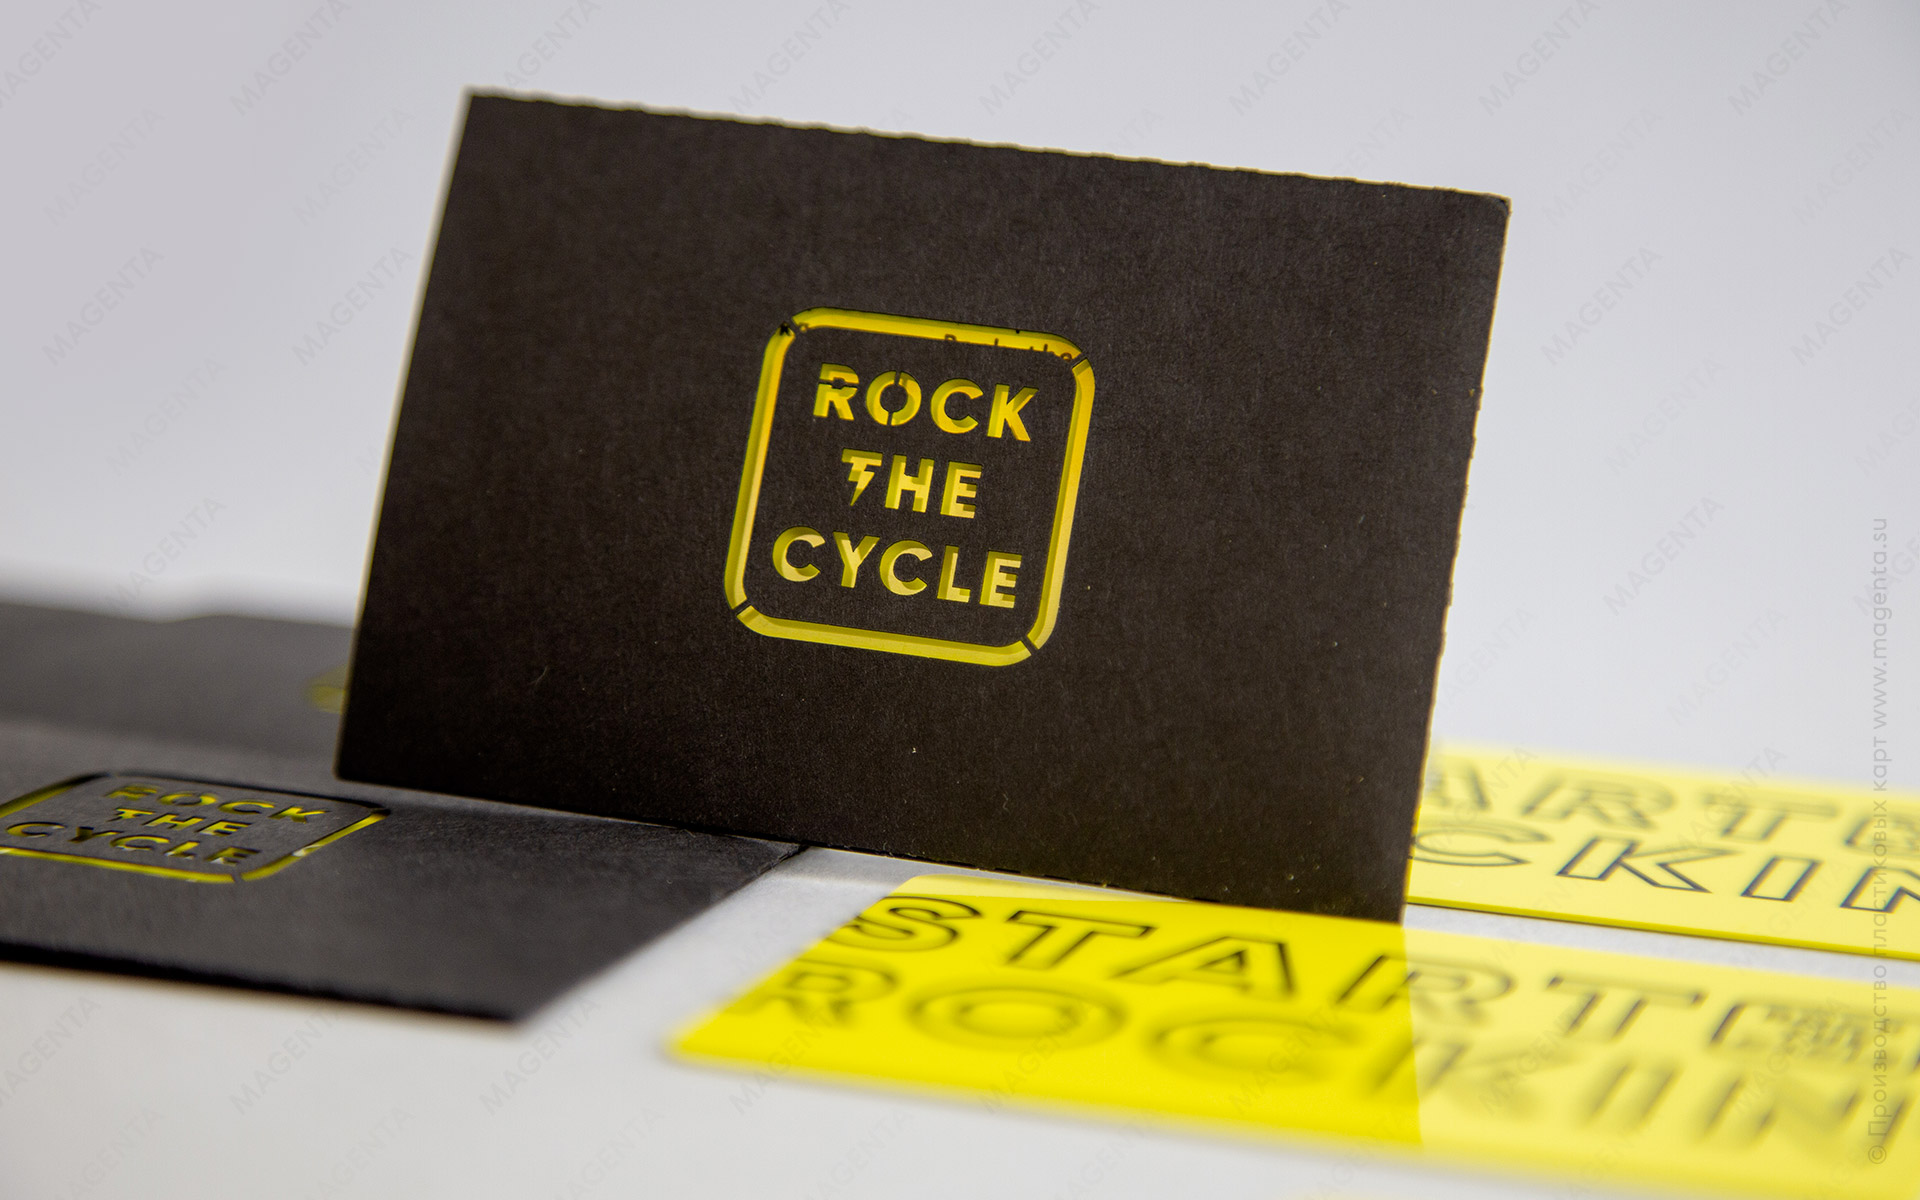 Фотография сертификата Сайкл-студии Rock the Cycle упакованного в конверт